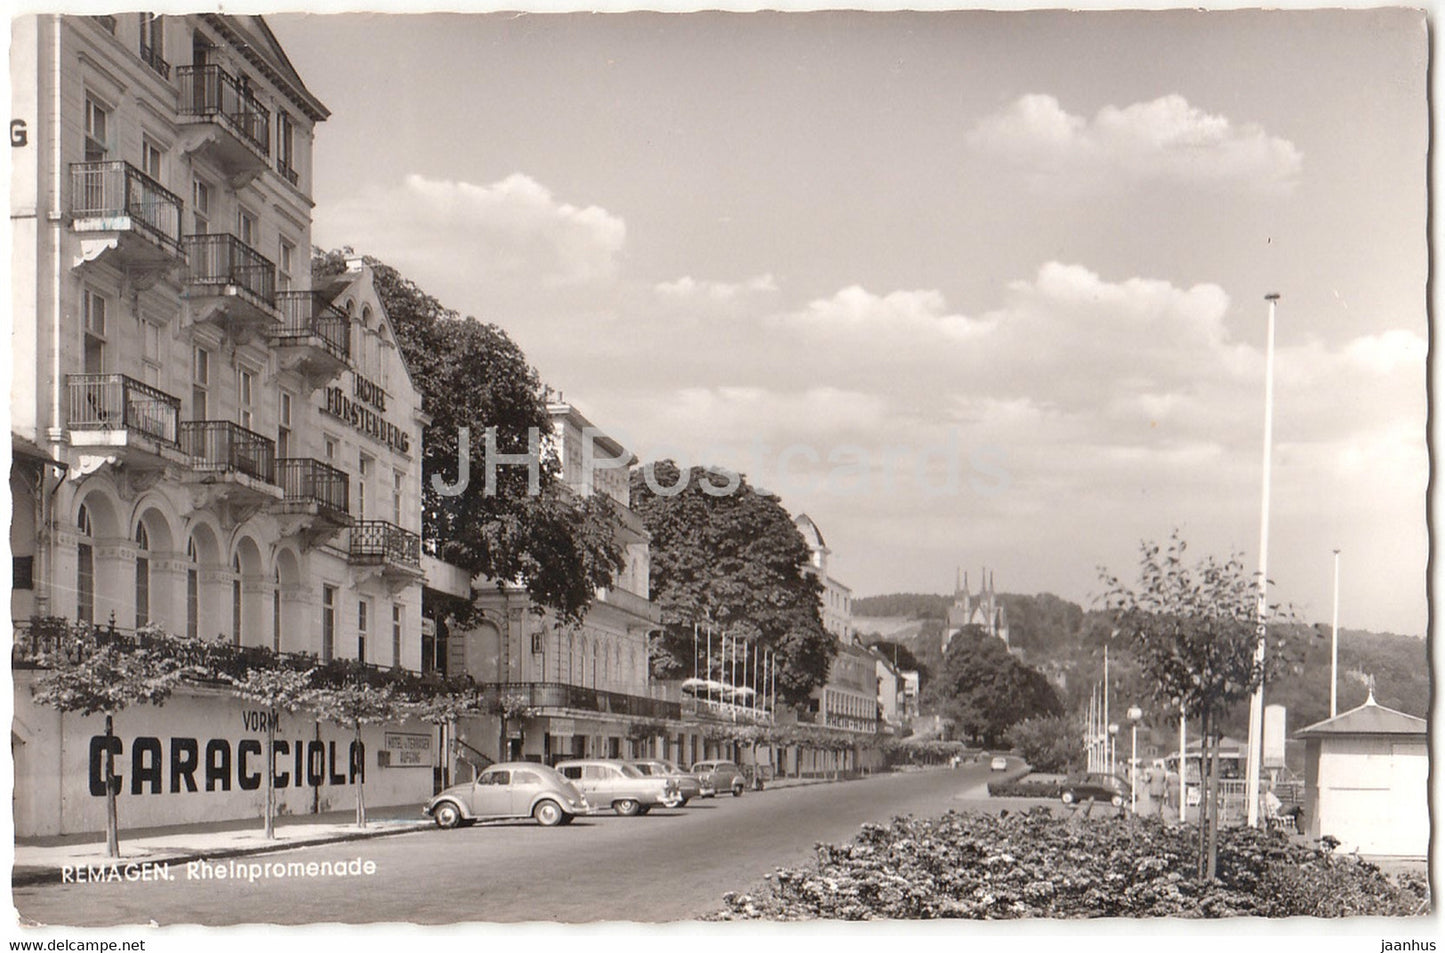 Remagen - Rheinpromenade - Hotel Furstenberg Caracciola - Remagen am Rhein - car Volkswagen - 1958 - Germany - used - JH Postcards